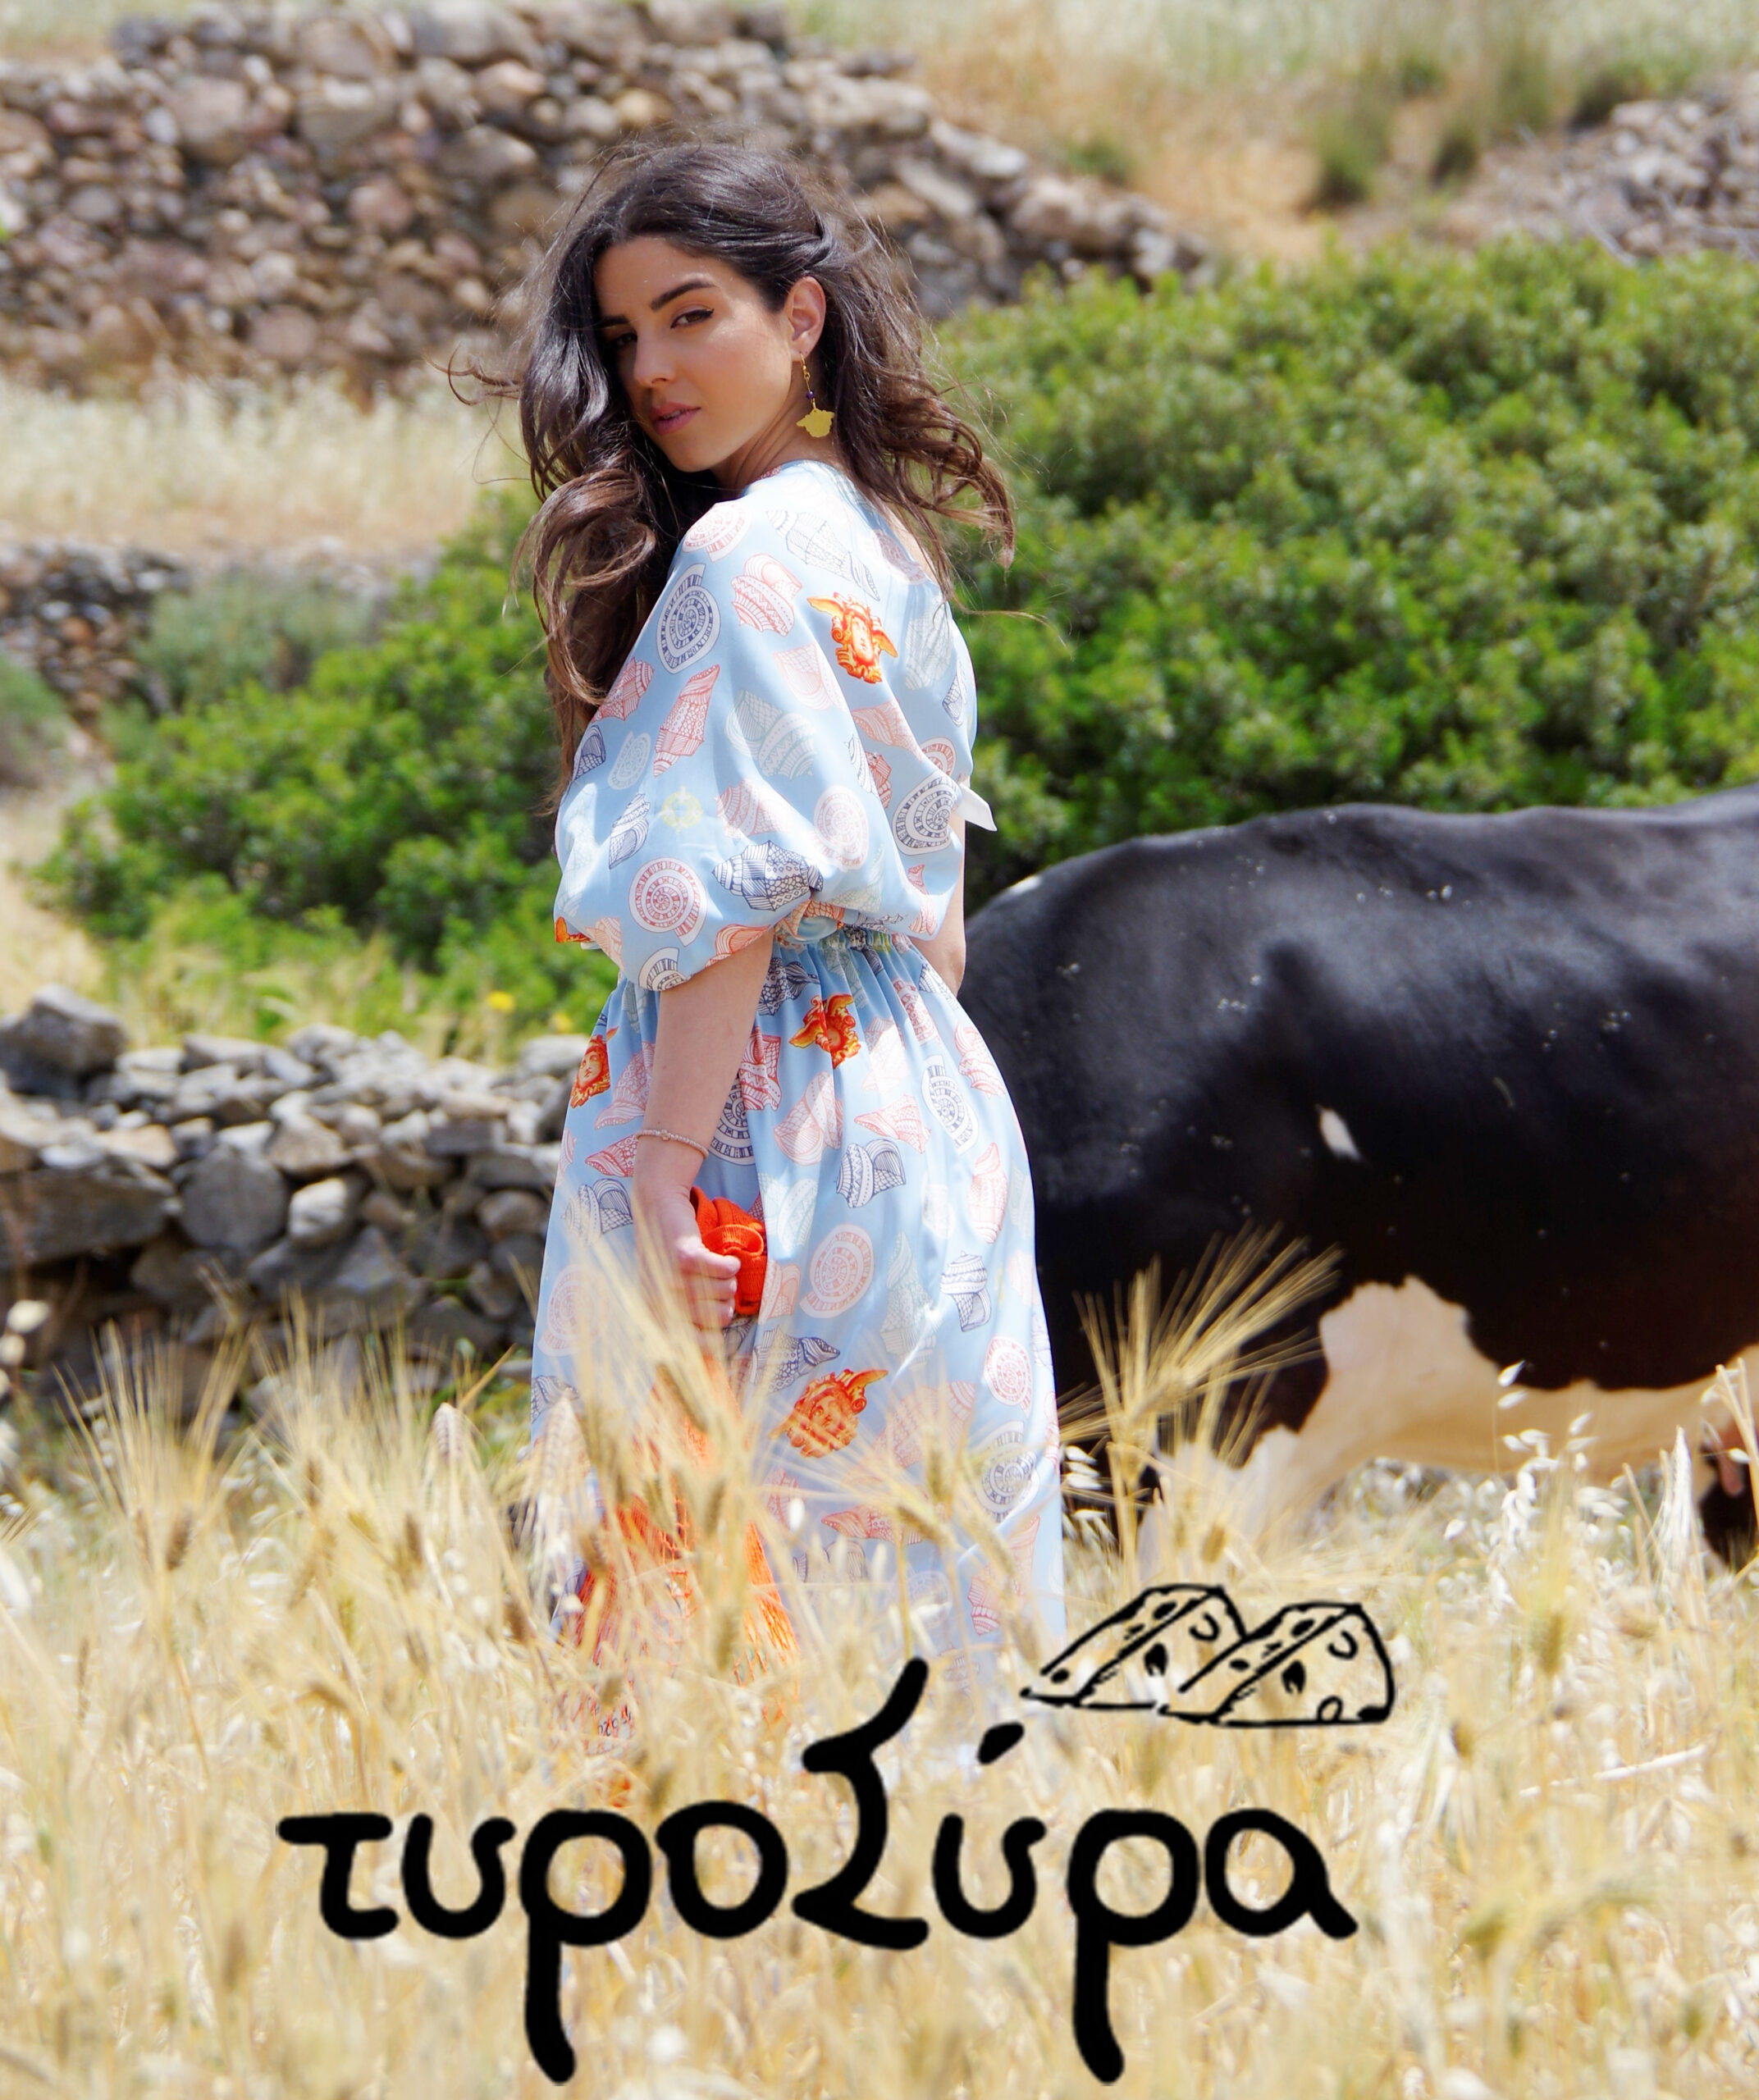 Σύρος και Αρχόντισσα και Αγρότισσα - Η πρωτότυπη Fashion φωτογράφιση στη Φύση!